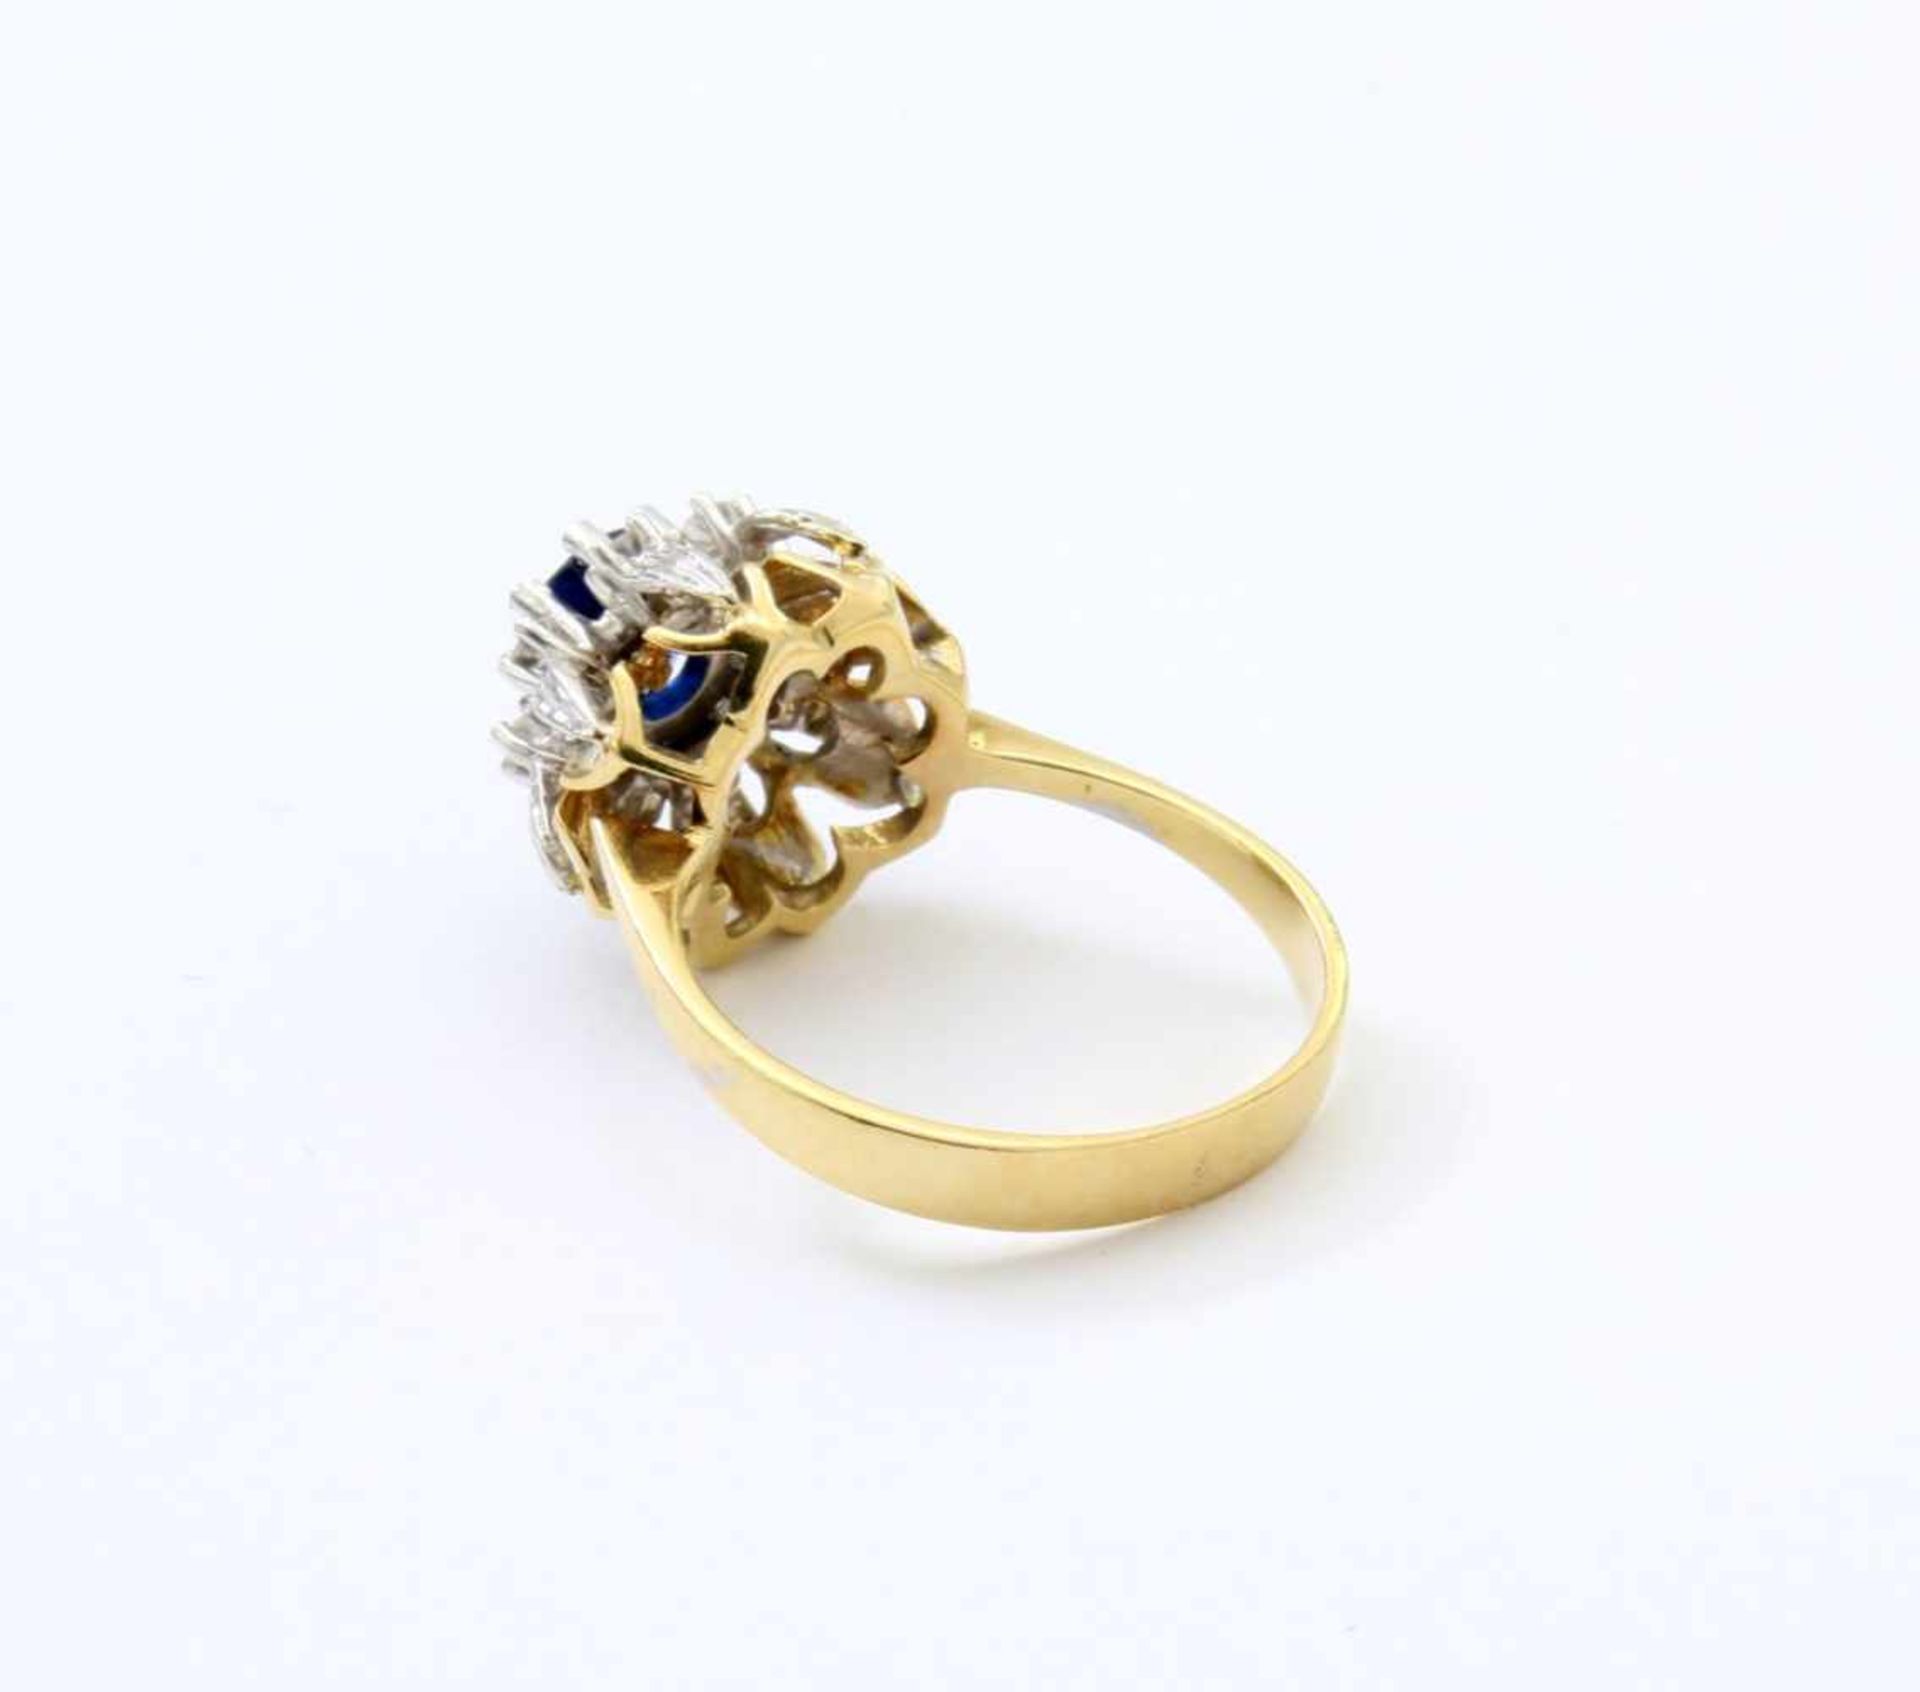 Gelbgold- /Weißgold-Ring mit Brillanten und Safir GG/WG 585, mittig tiefblauer Safir im - Bild 4 aus 4